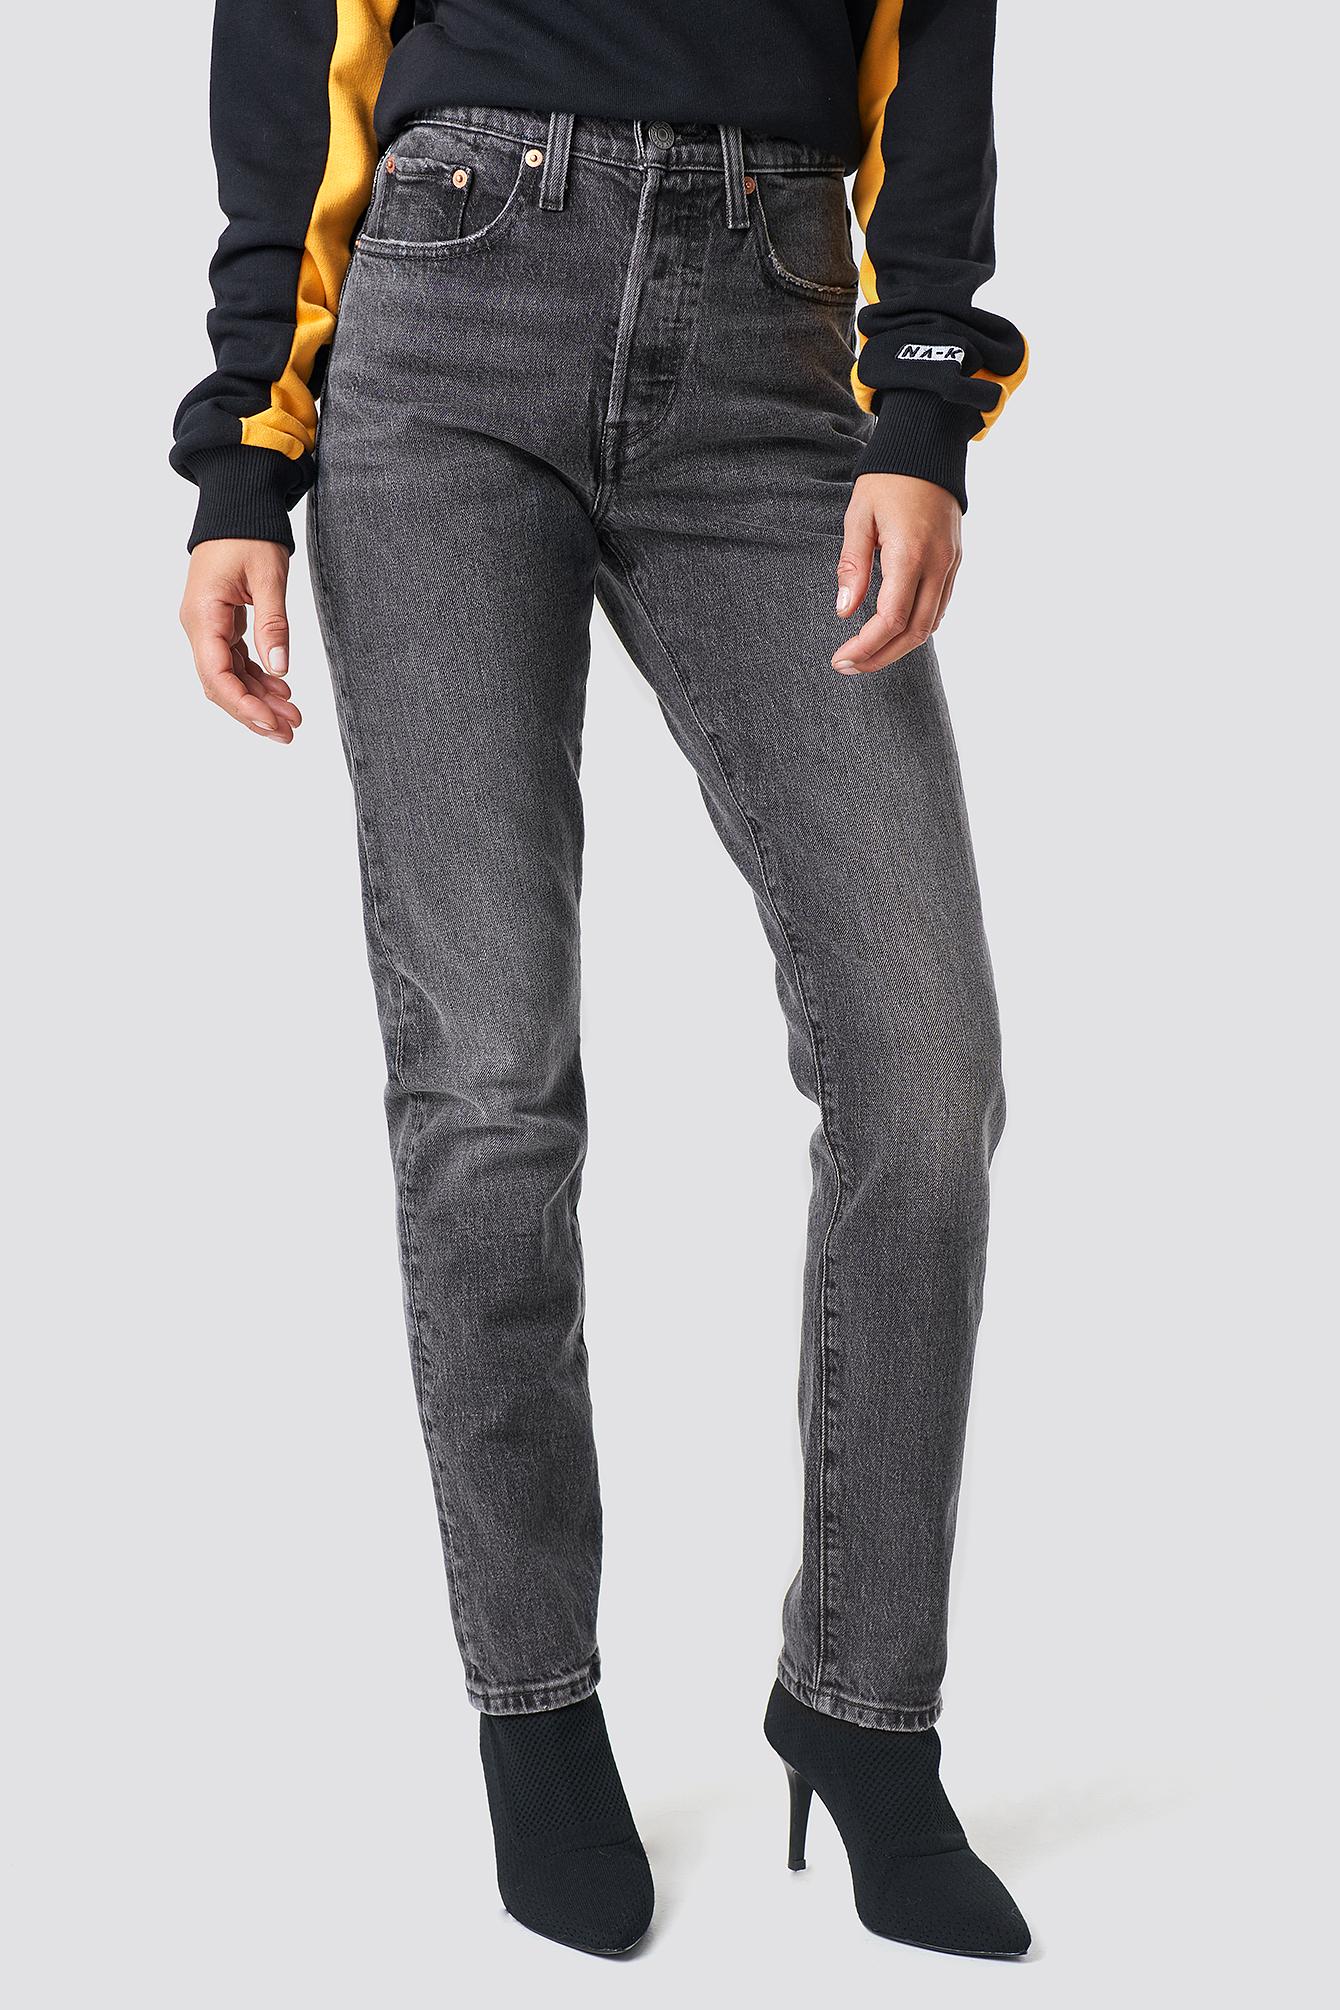 Levi's Denim 501 Skinny Jeans Grey in Black - Lyst